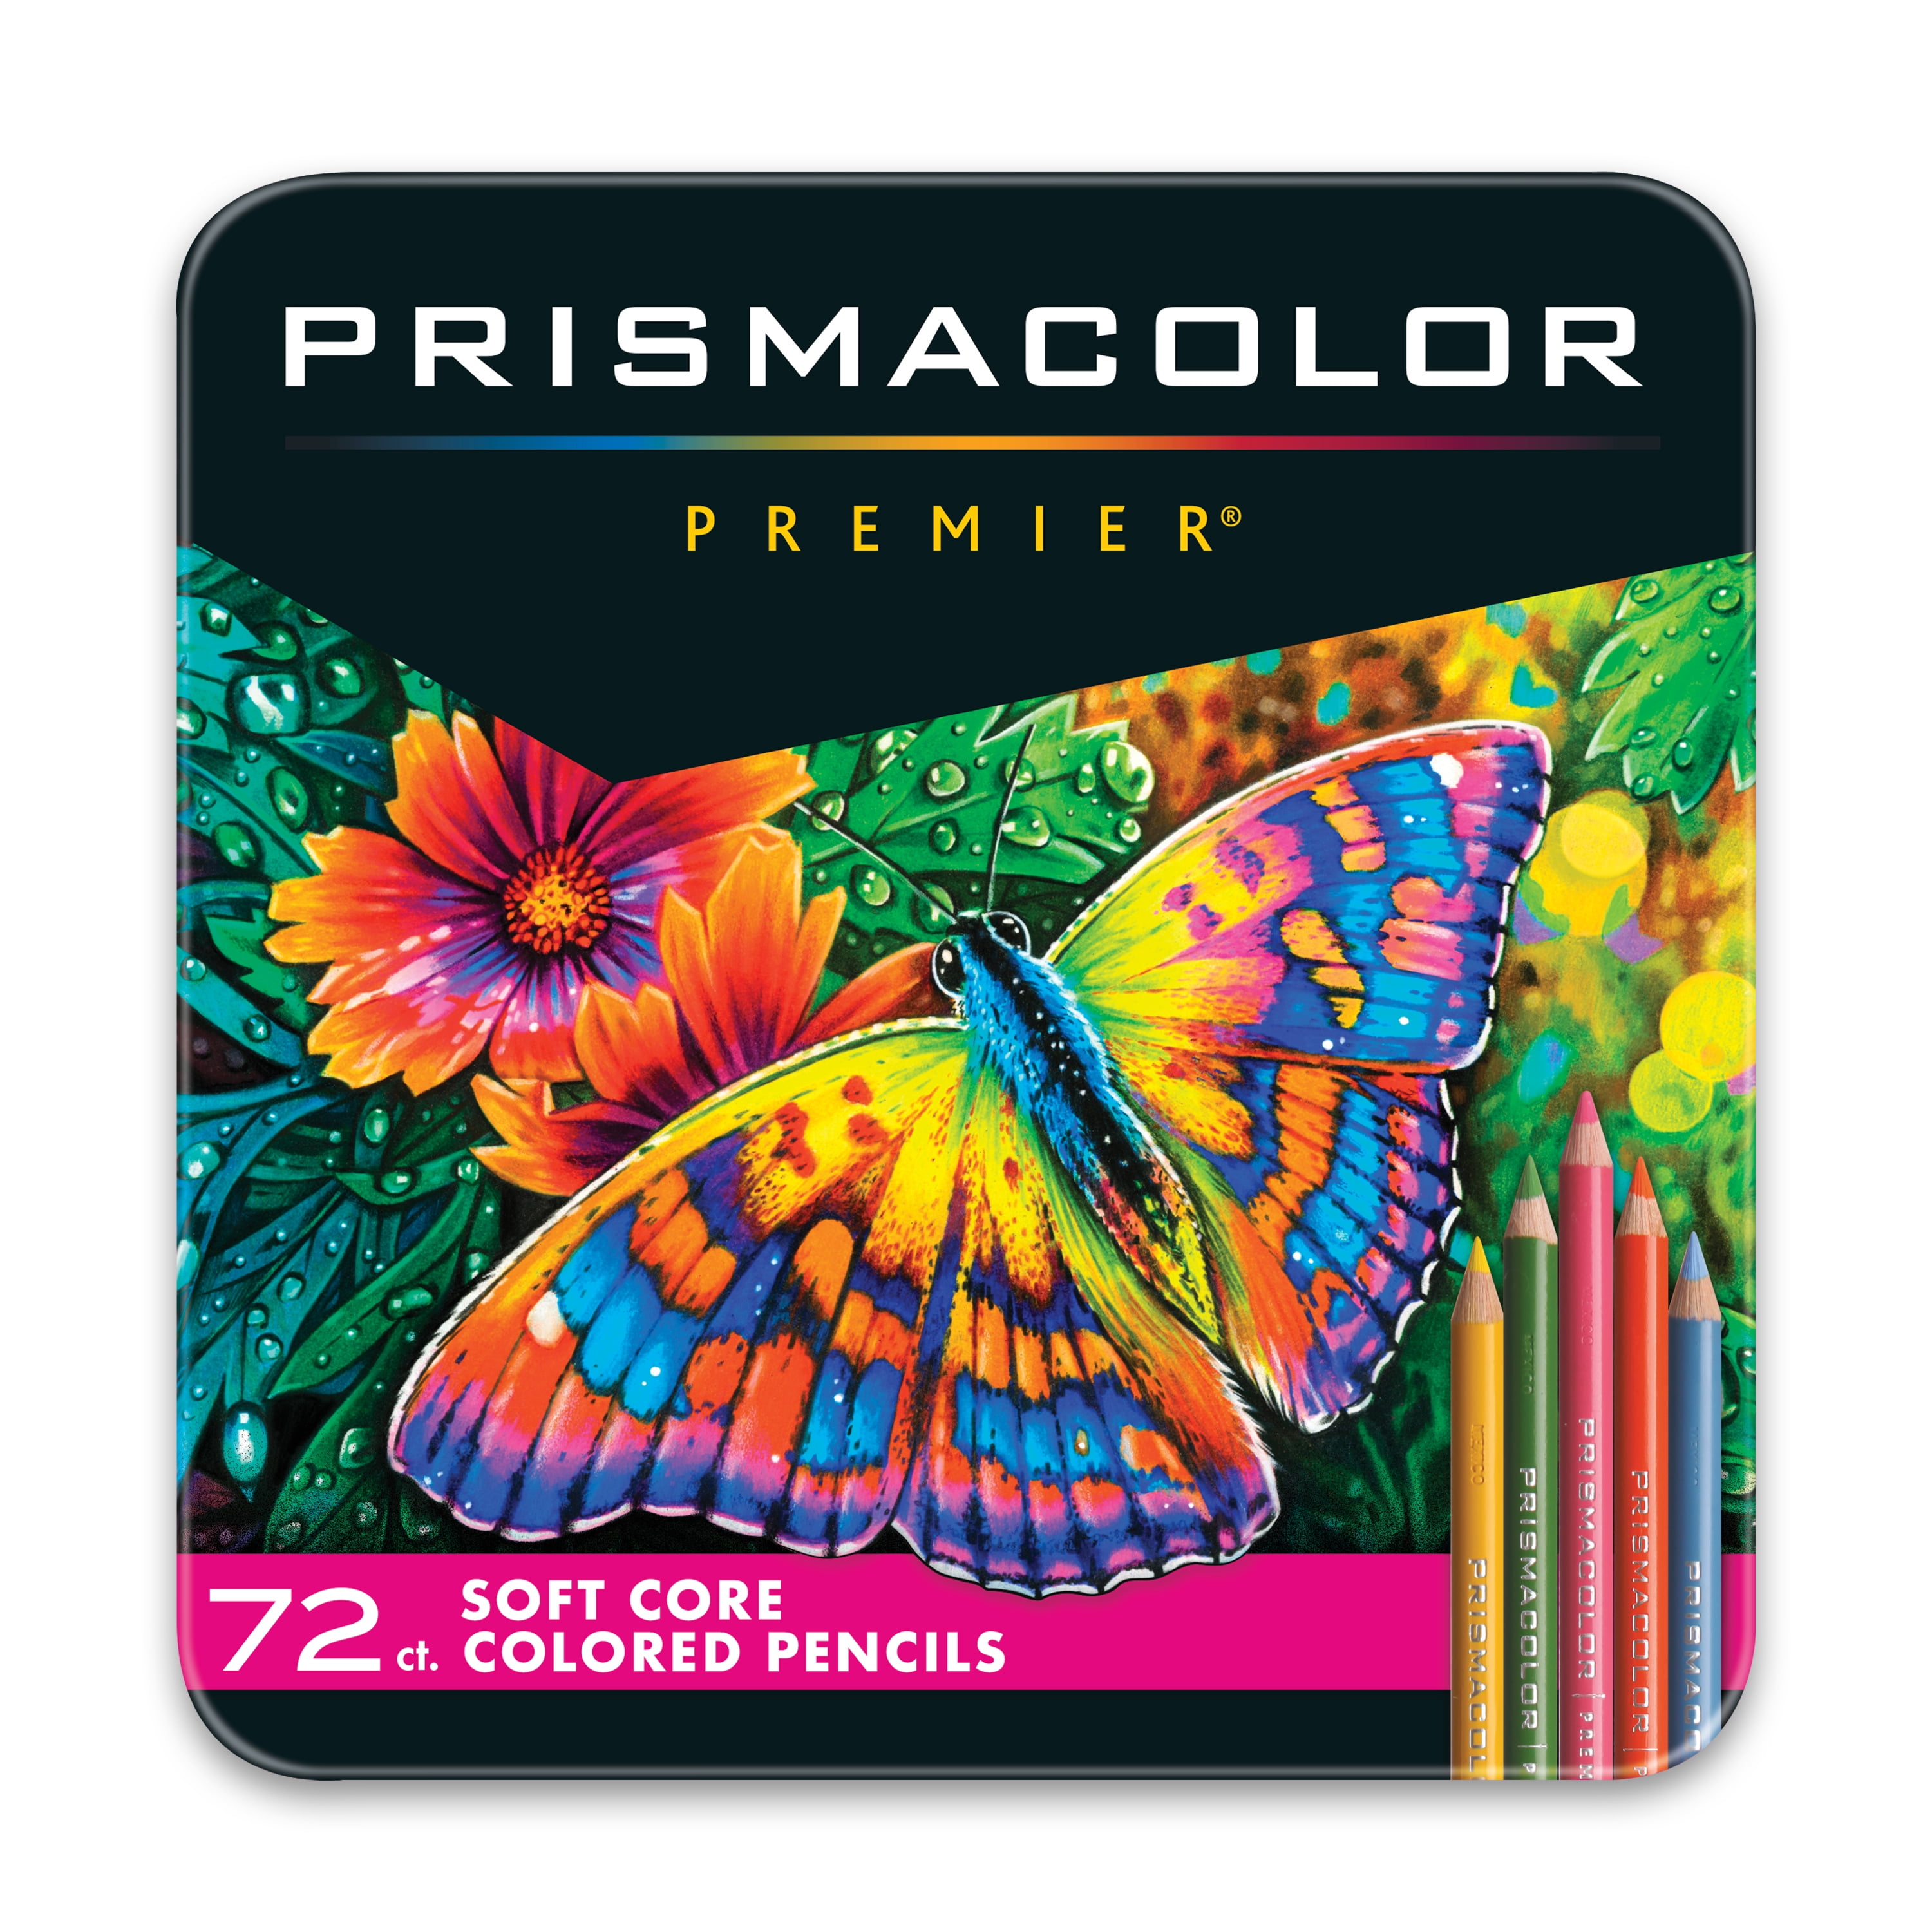 Prismacolor Colored Pencils, Premier Soft Core Pencils, Assorted, 72 Count